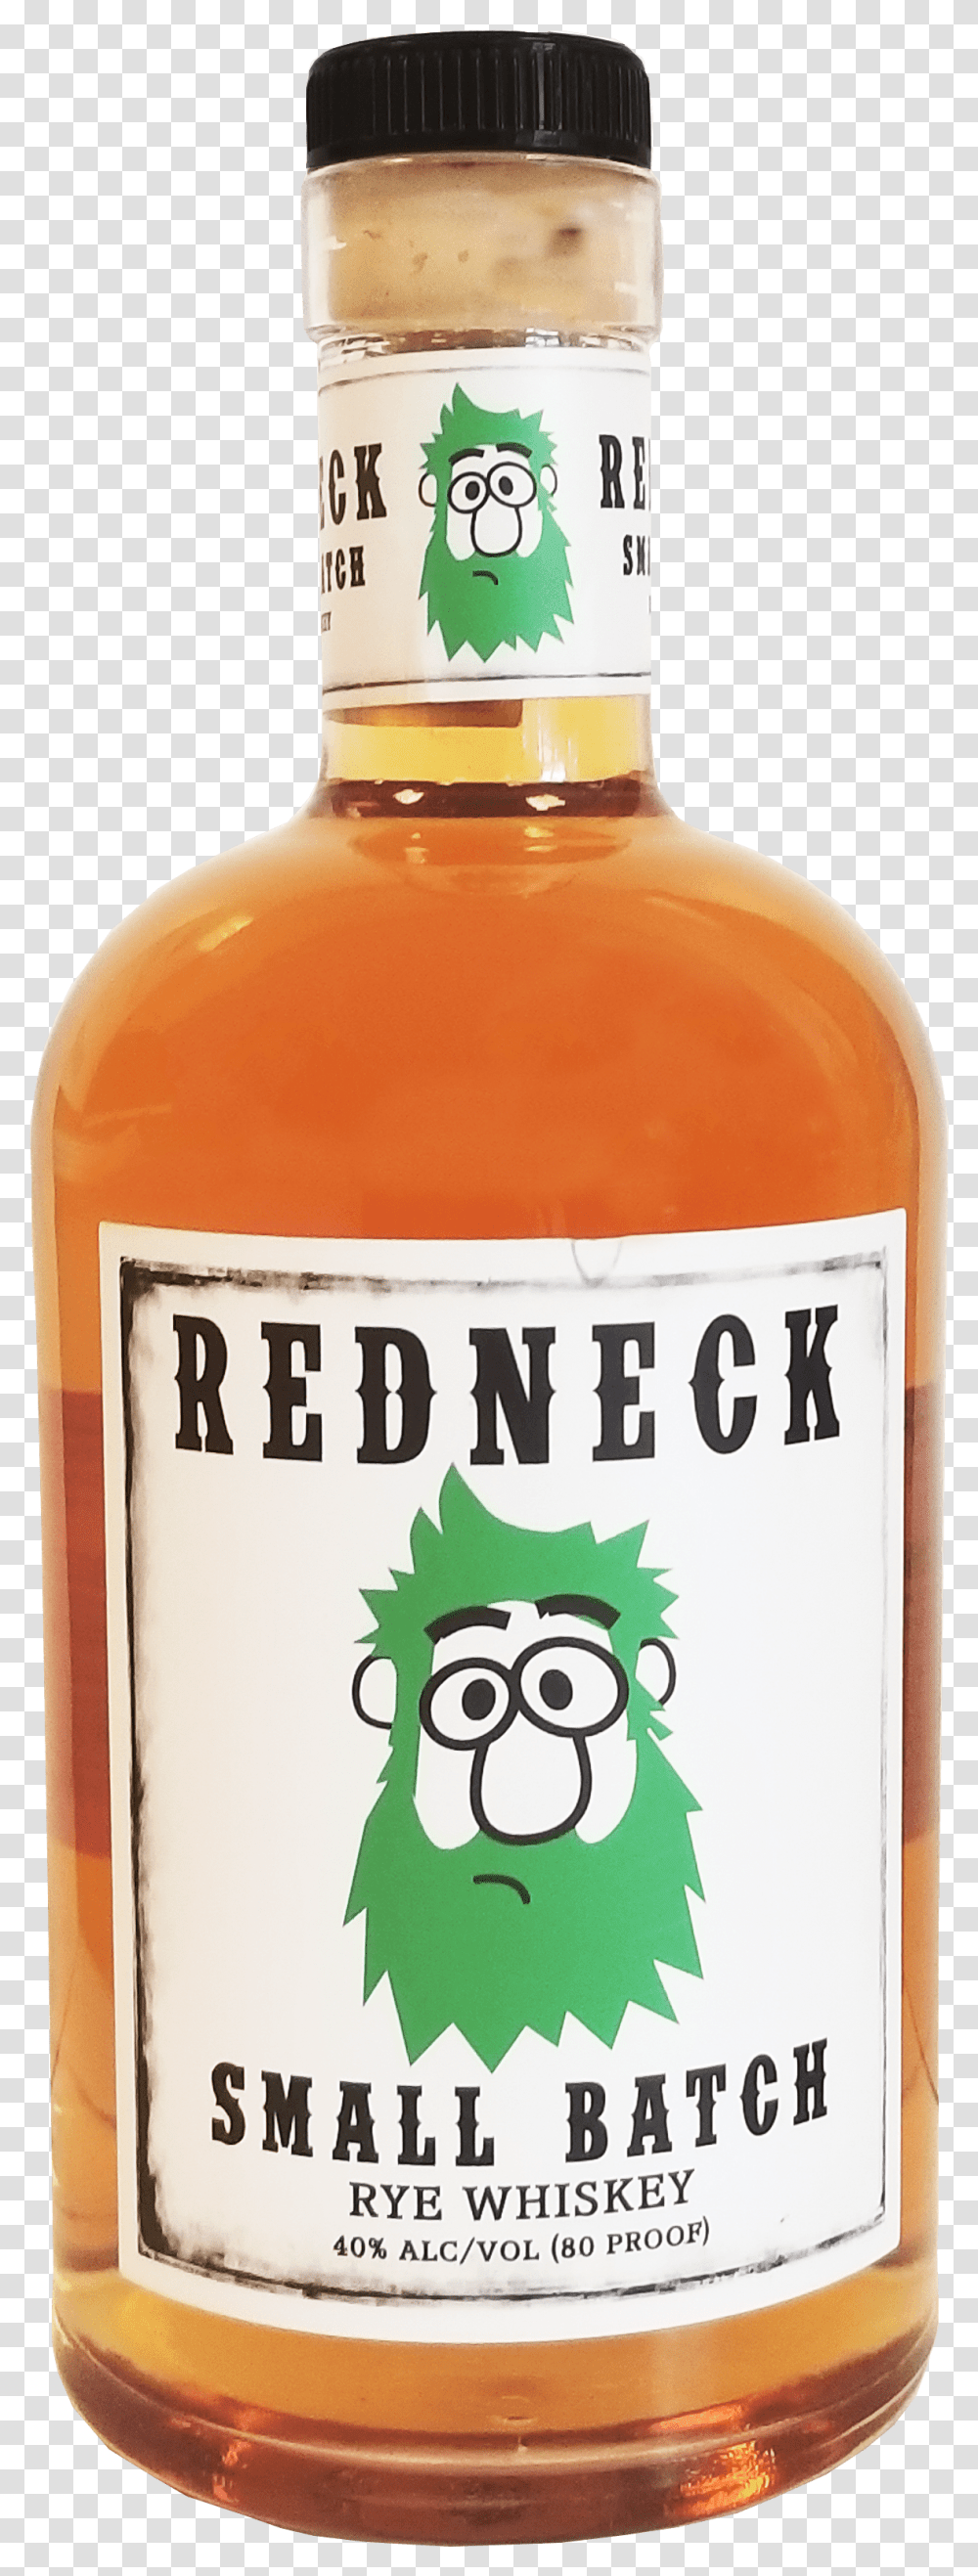 Redneck Rye Whiskey Min Glass Bottle Cartoon Line Art, Liquor, Alcohol, Beverage, Drink Transparent Png